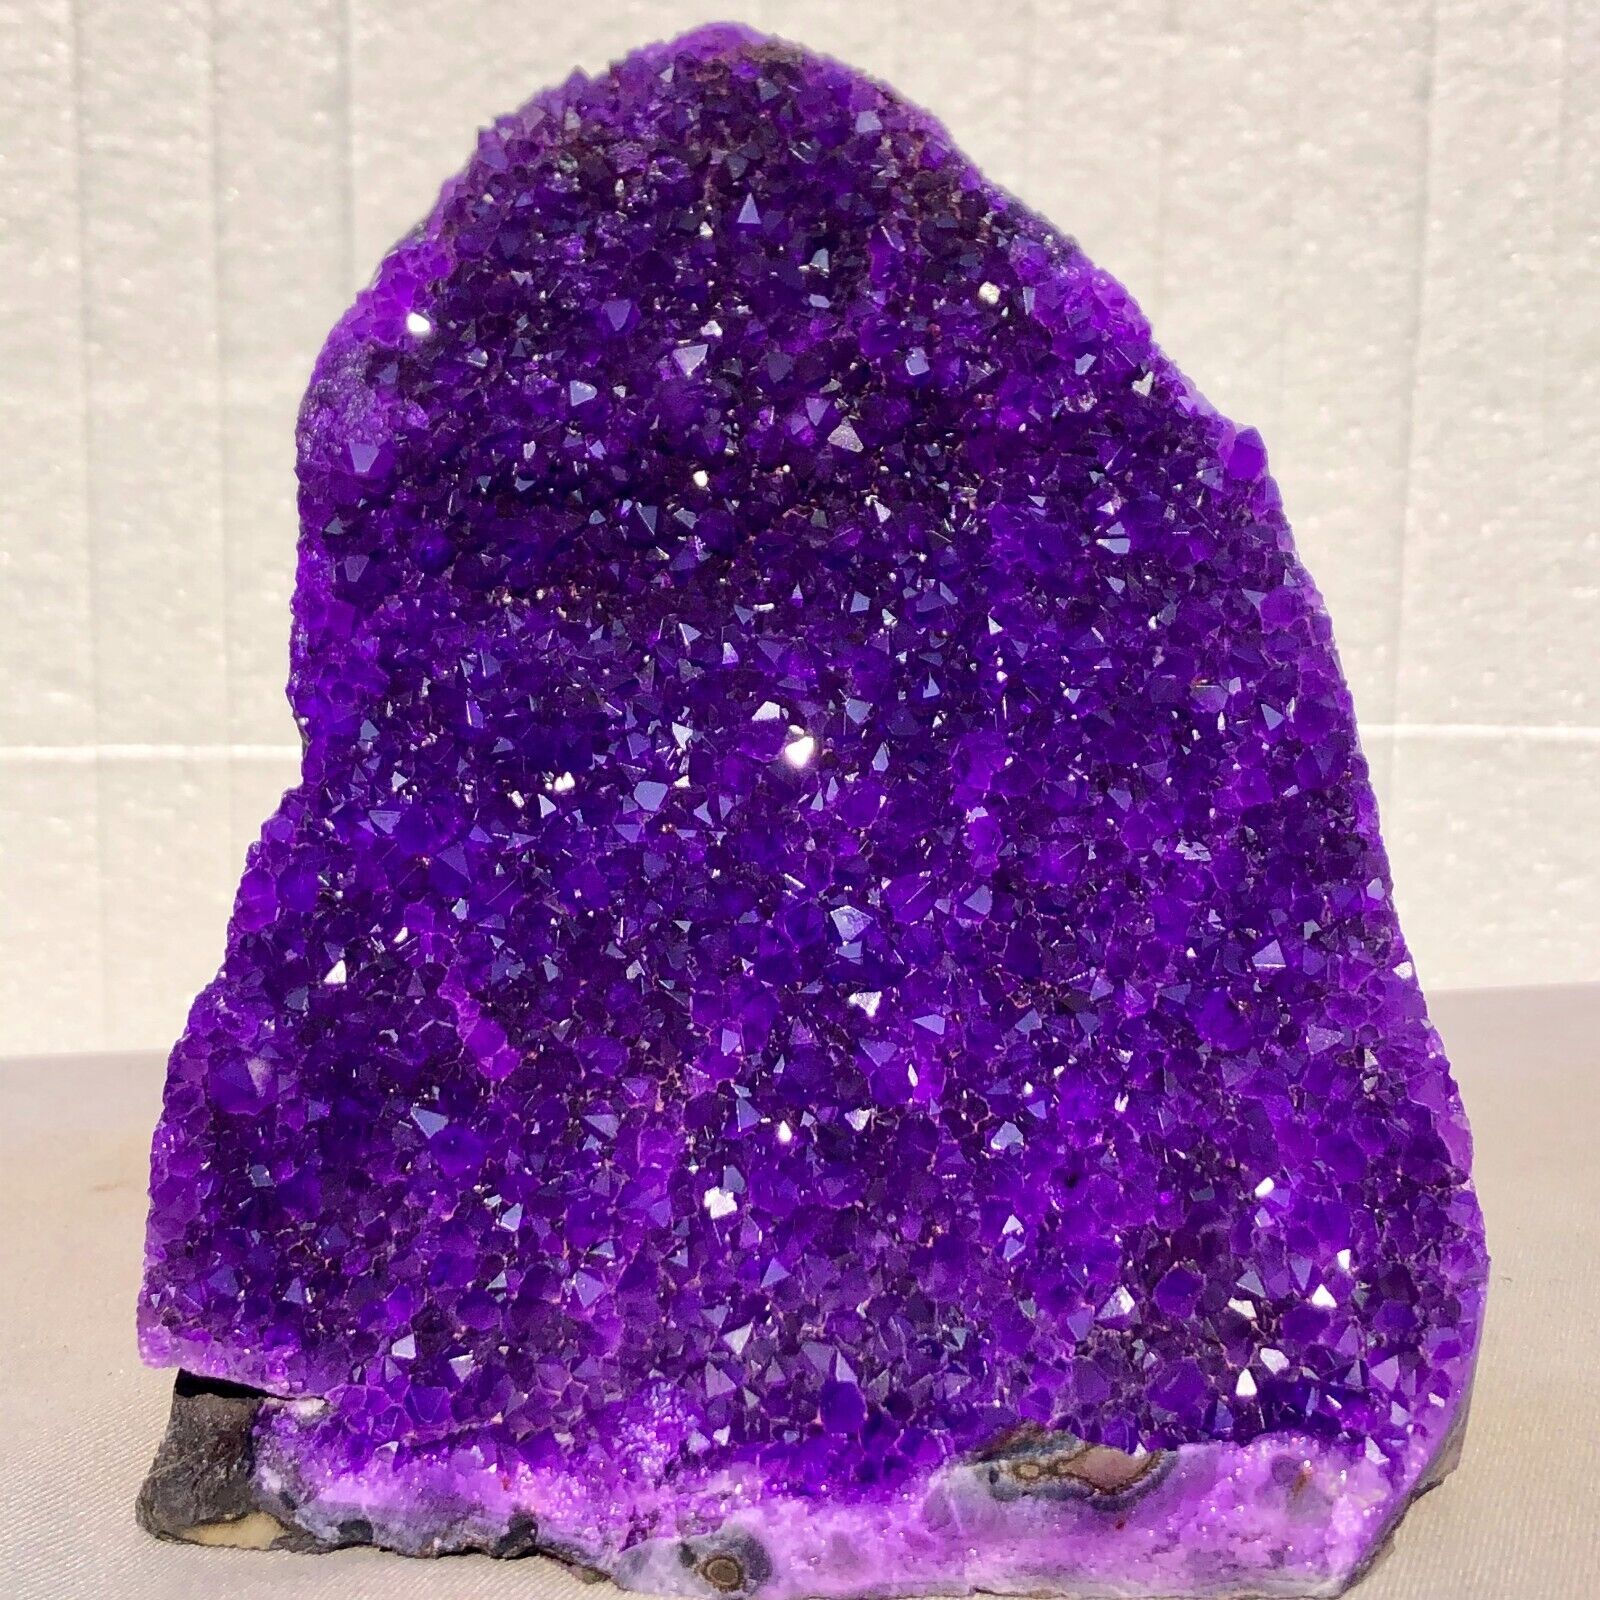 4.12lb Natural Amethyst geode quartz cluster crystal specimen energy Healing